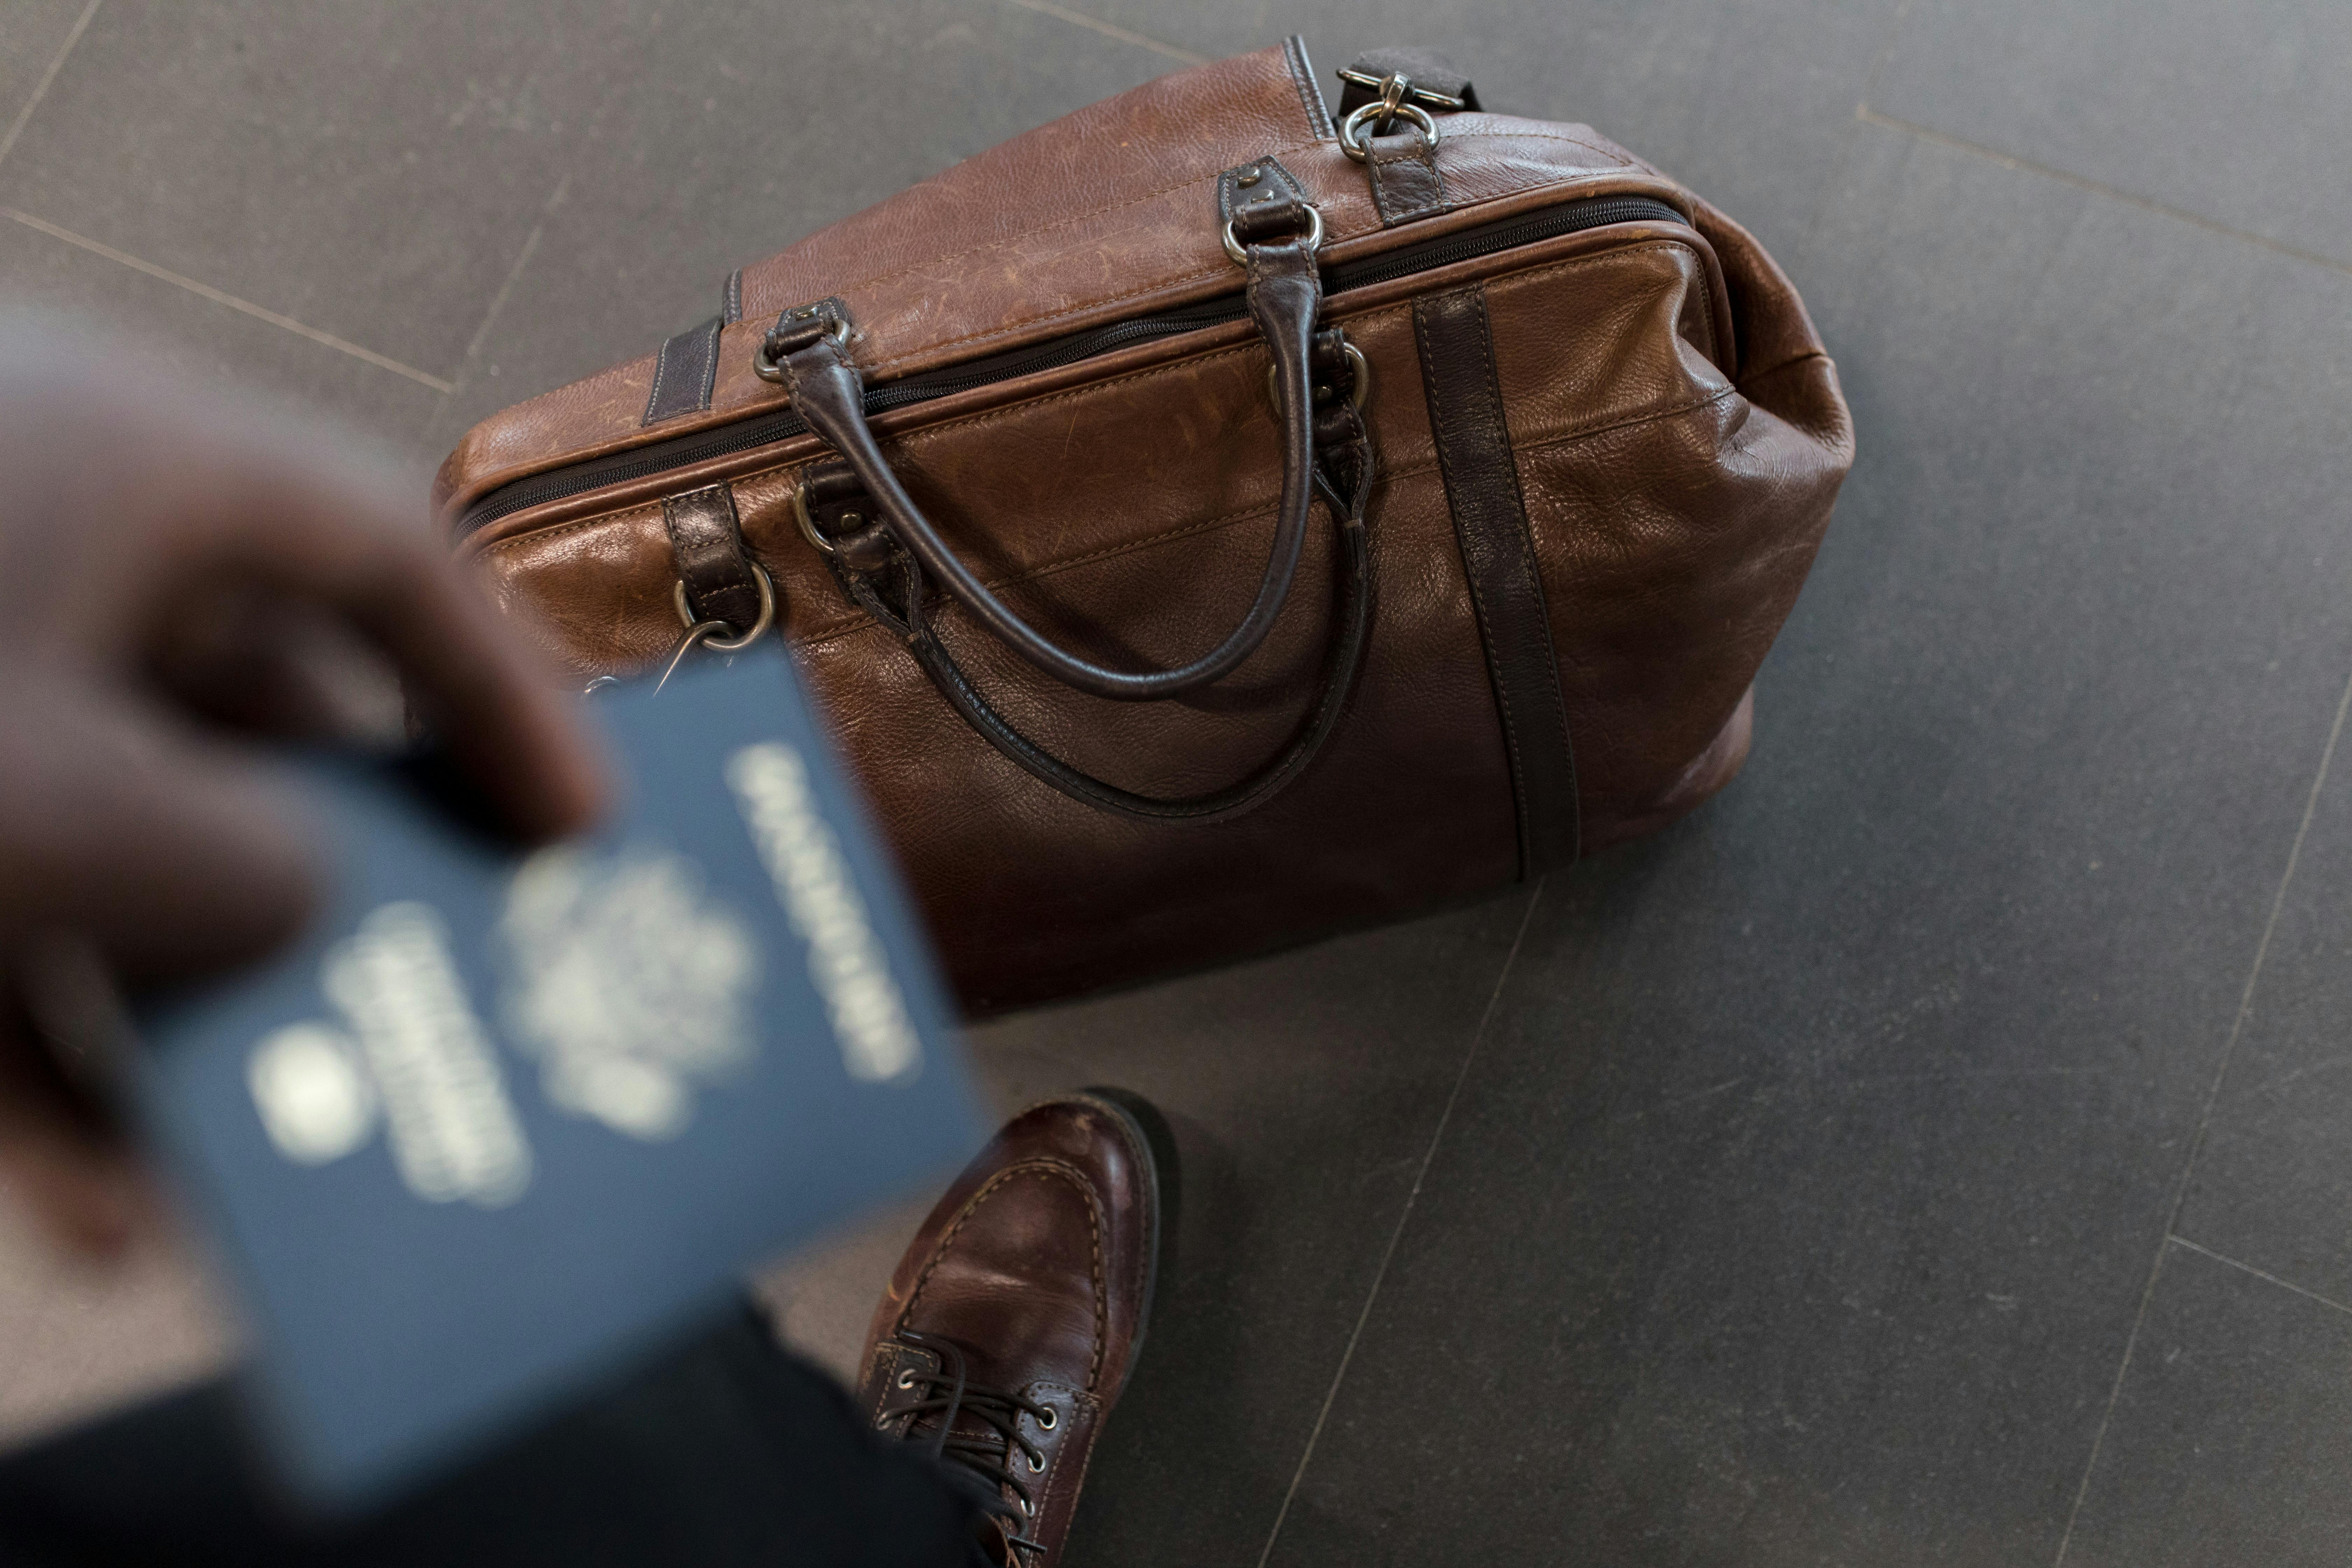 Imagen extraída de banco de imágenes: Maletín y pasaporte.